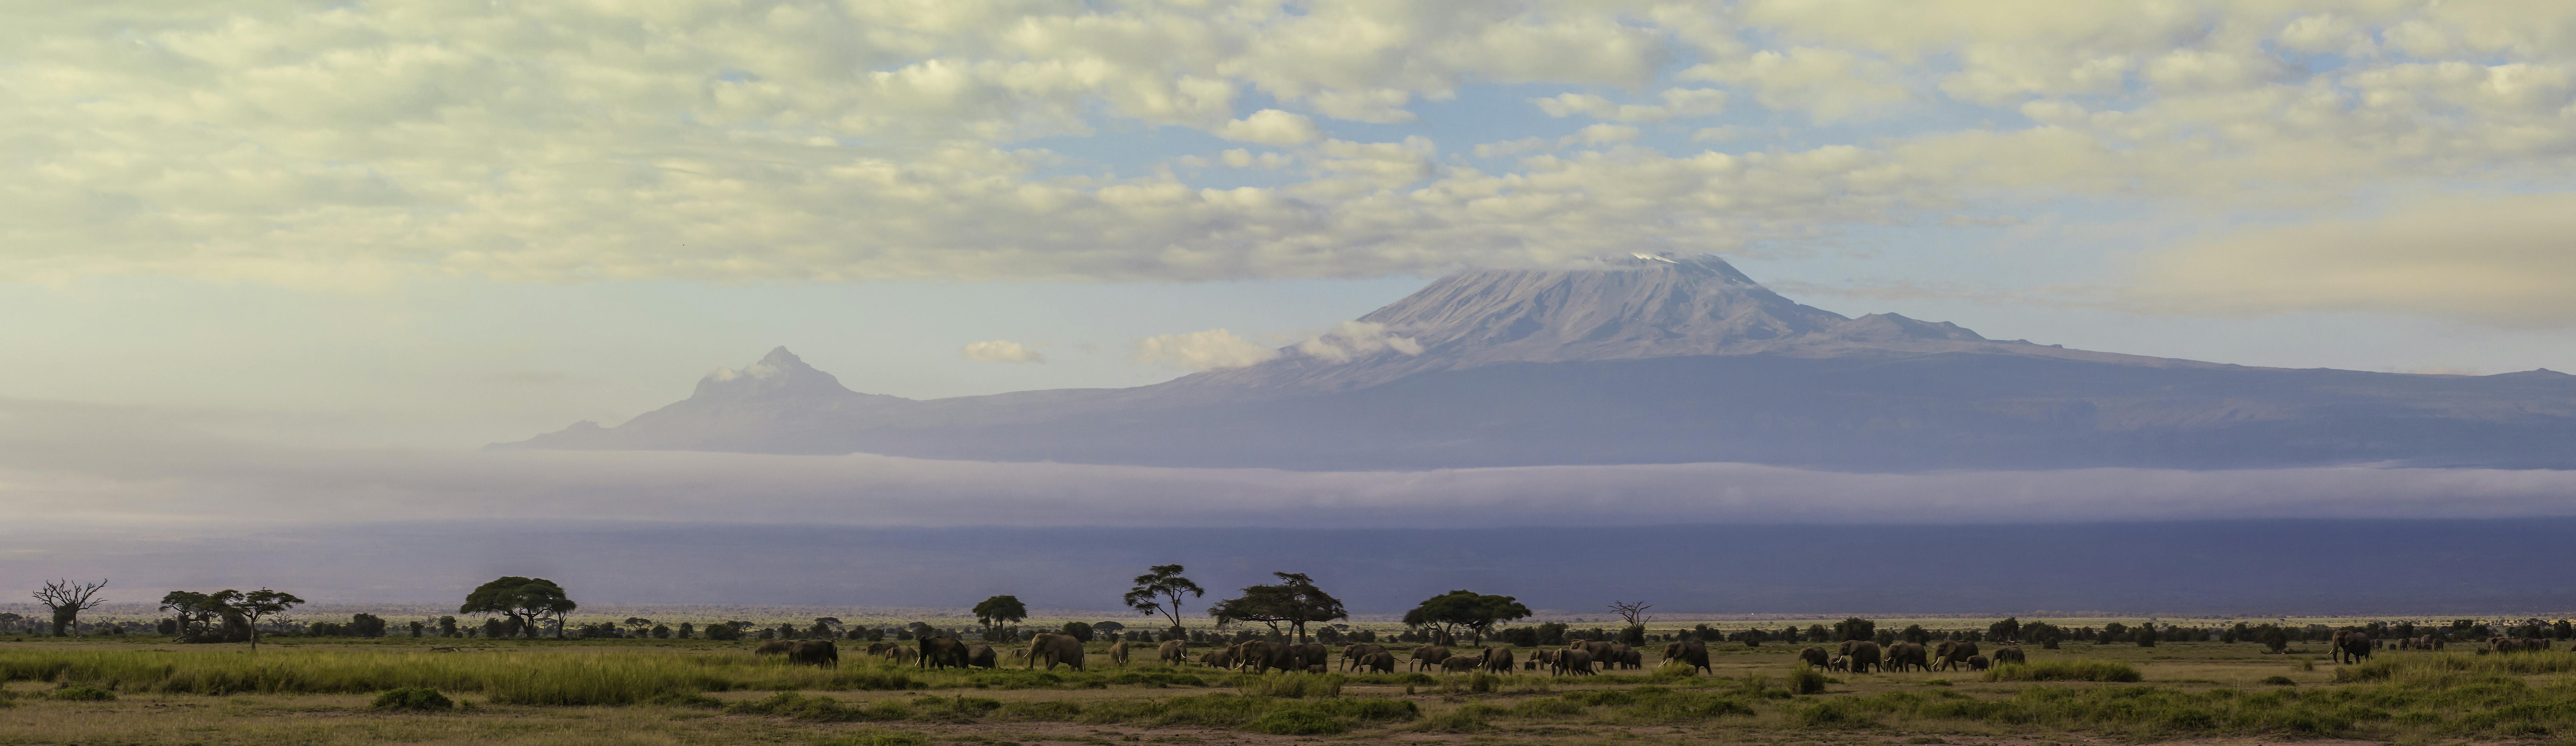 Jednodniowa wycieczka na Kilimandżaro z Arushy